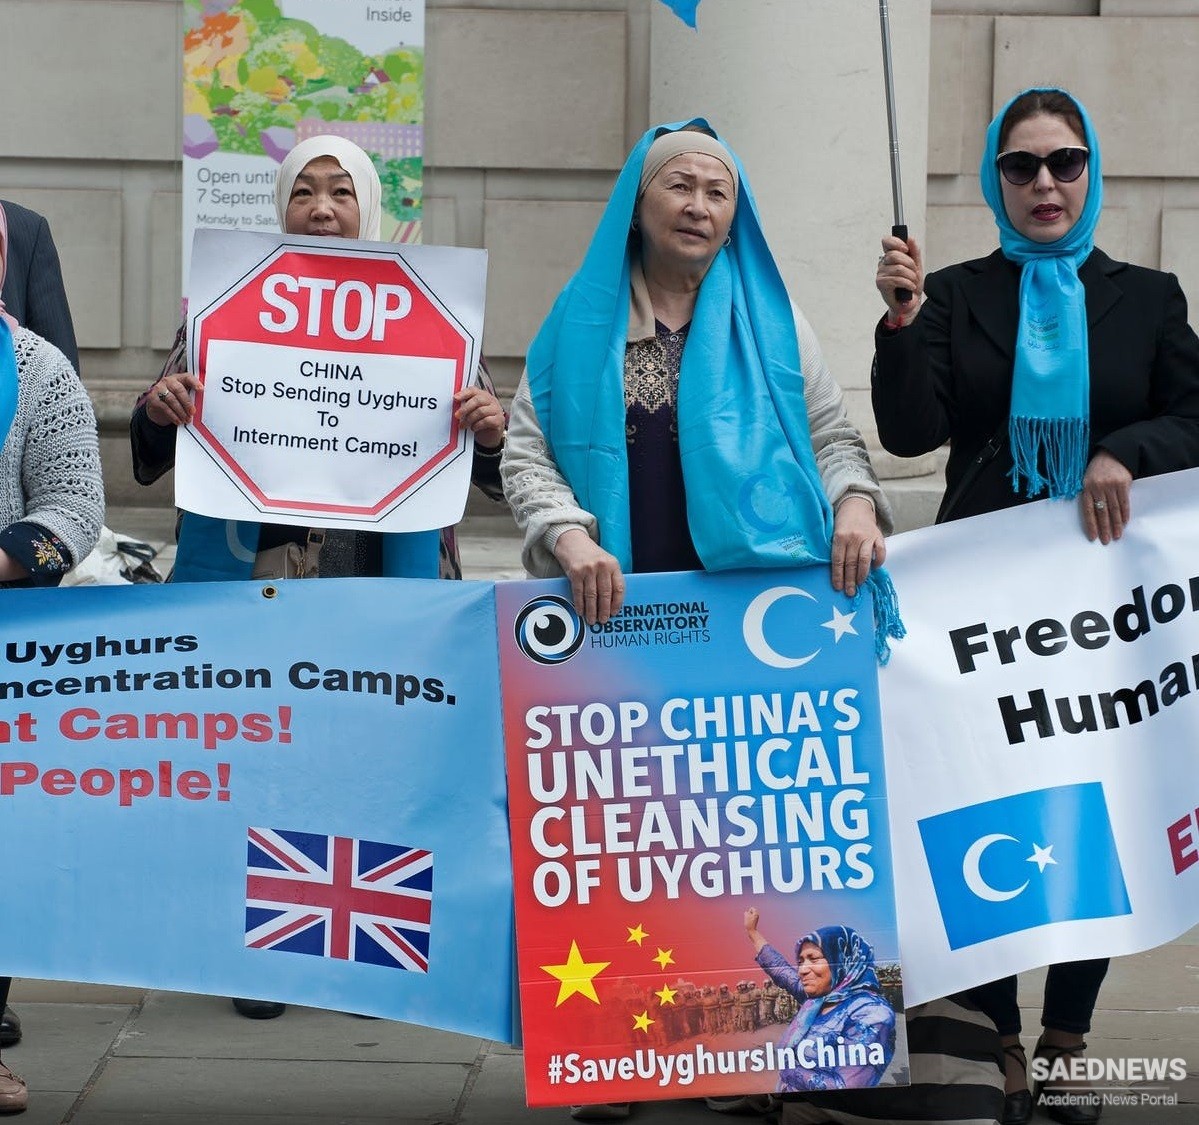 नसबंदी और अलगाव के माध्यम से चीन में उइघुर मुसलमानों का मौन उन्मूलन